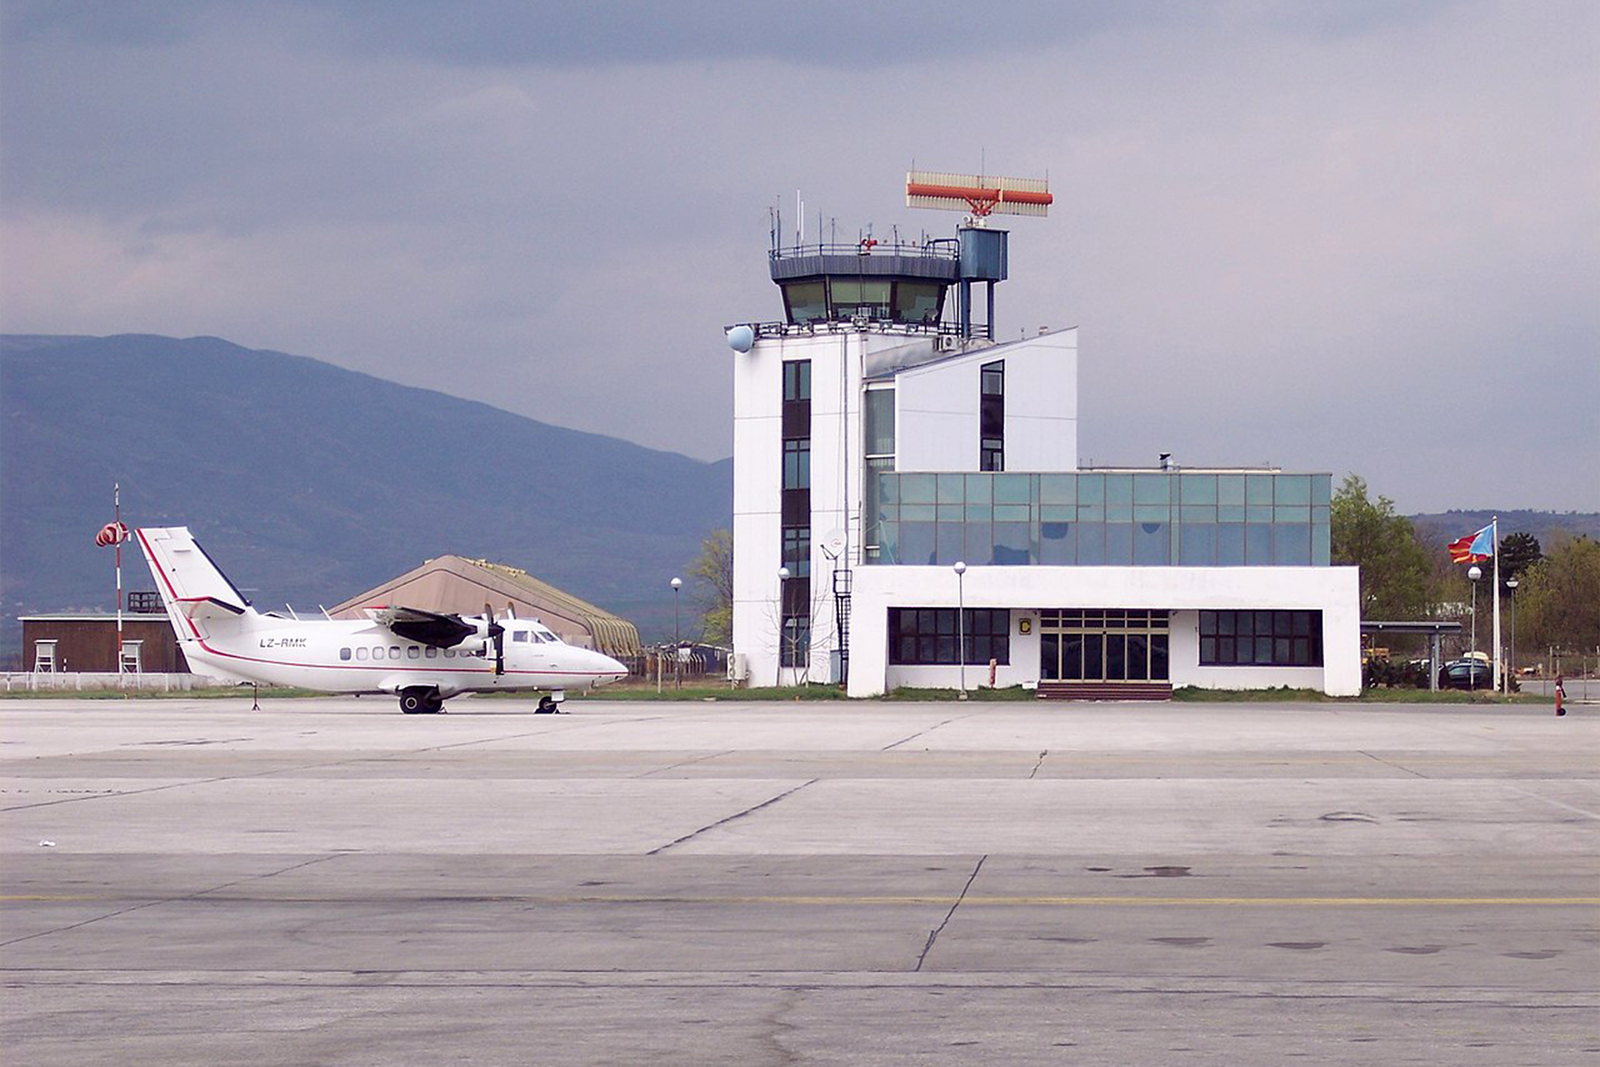 Torre de control del aeropuerto de Skopie donde atacaron al controlador aéreo. Foto: Kayhan Ertugrul